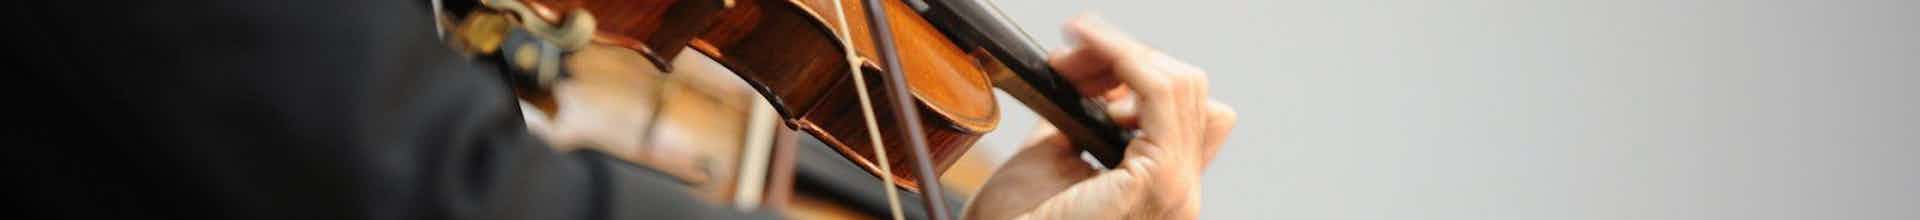 violist-close-up.jpg